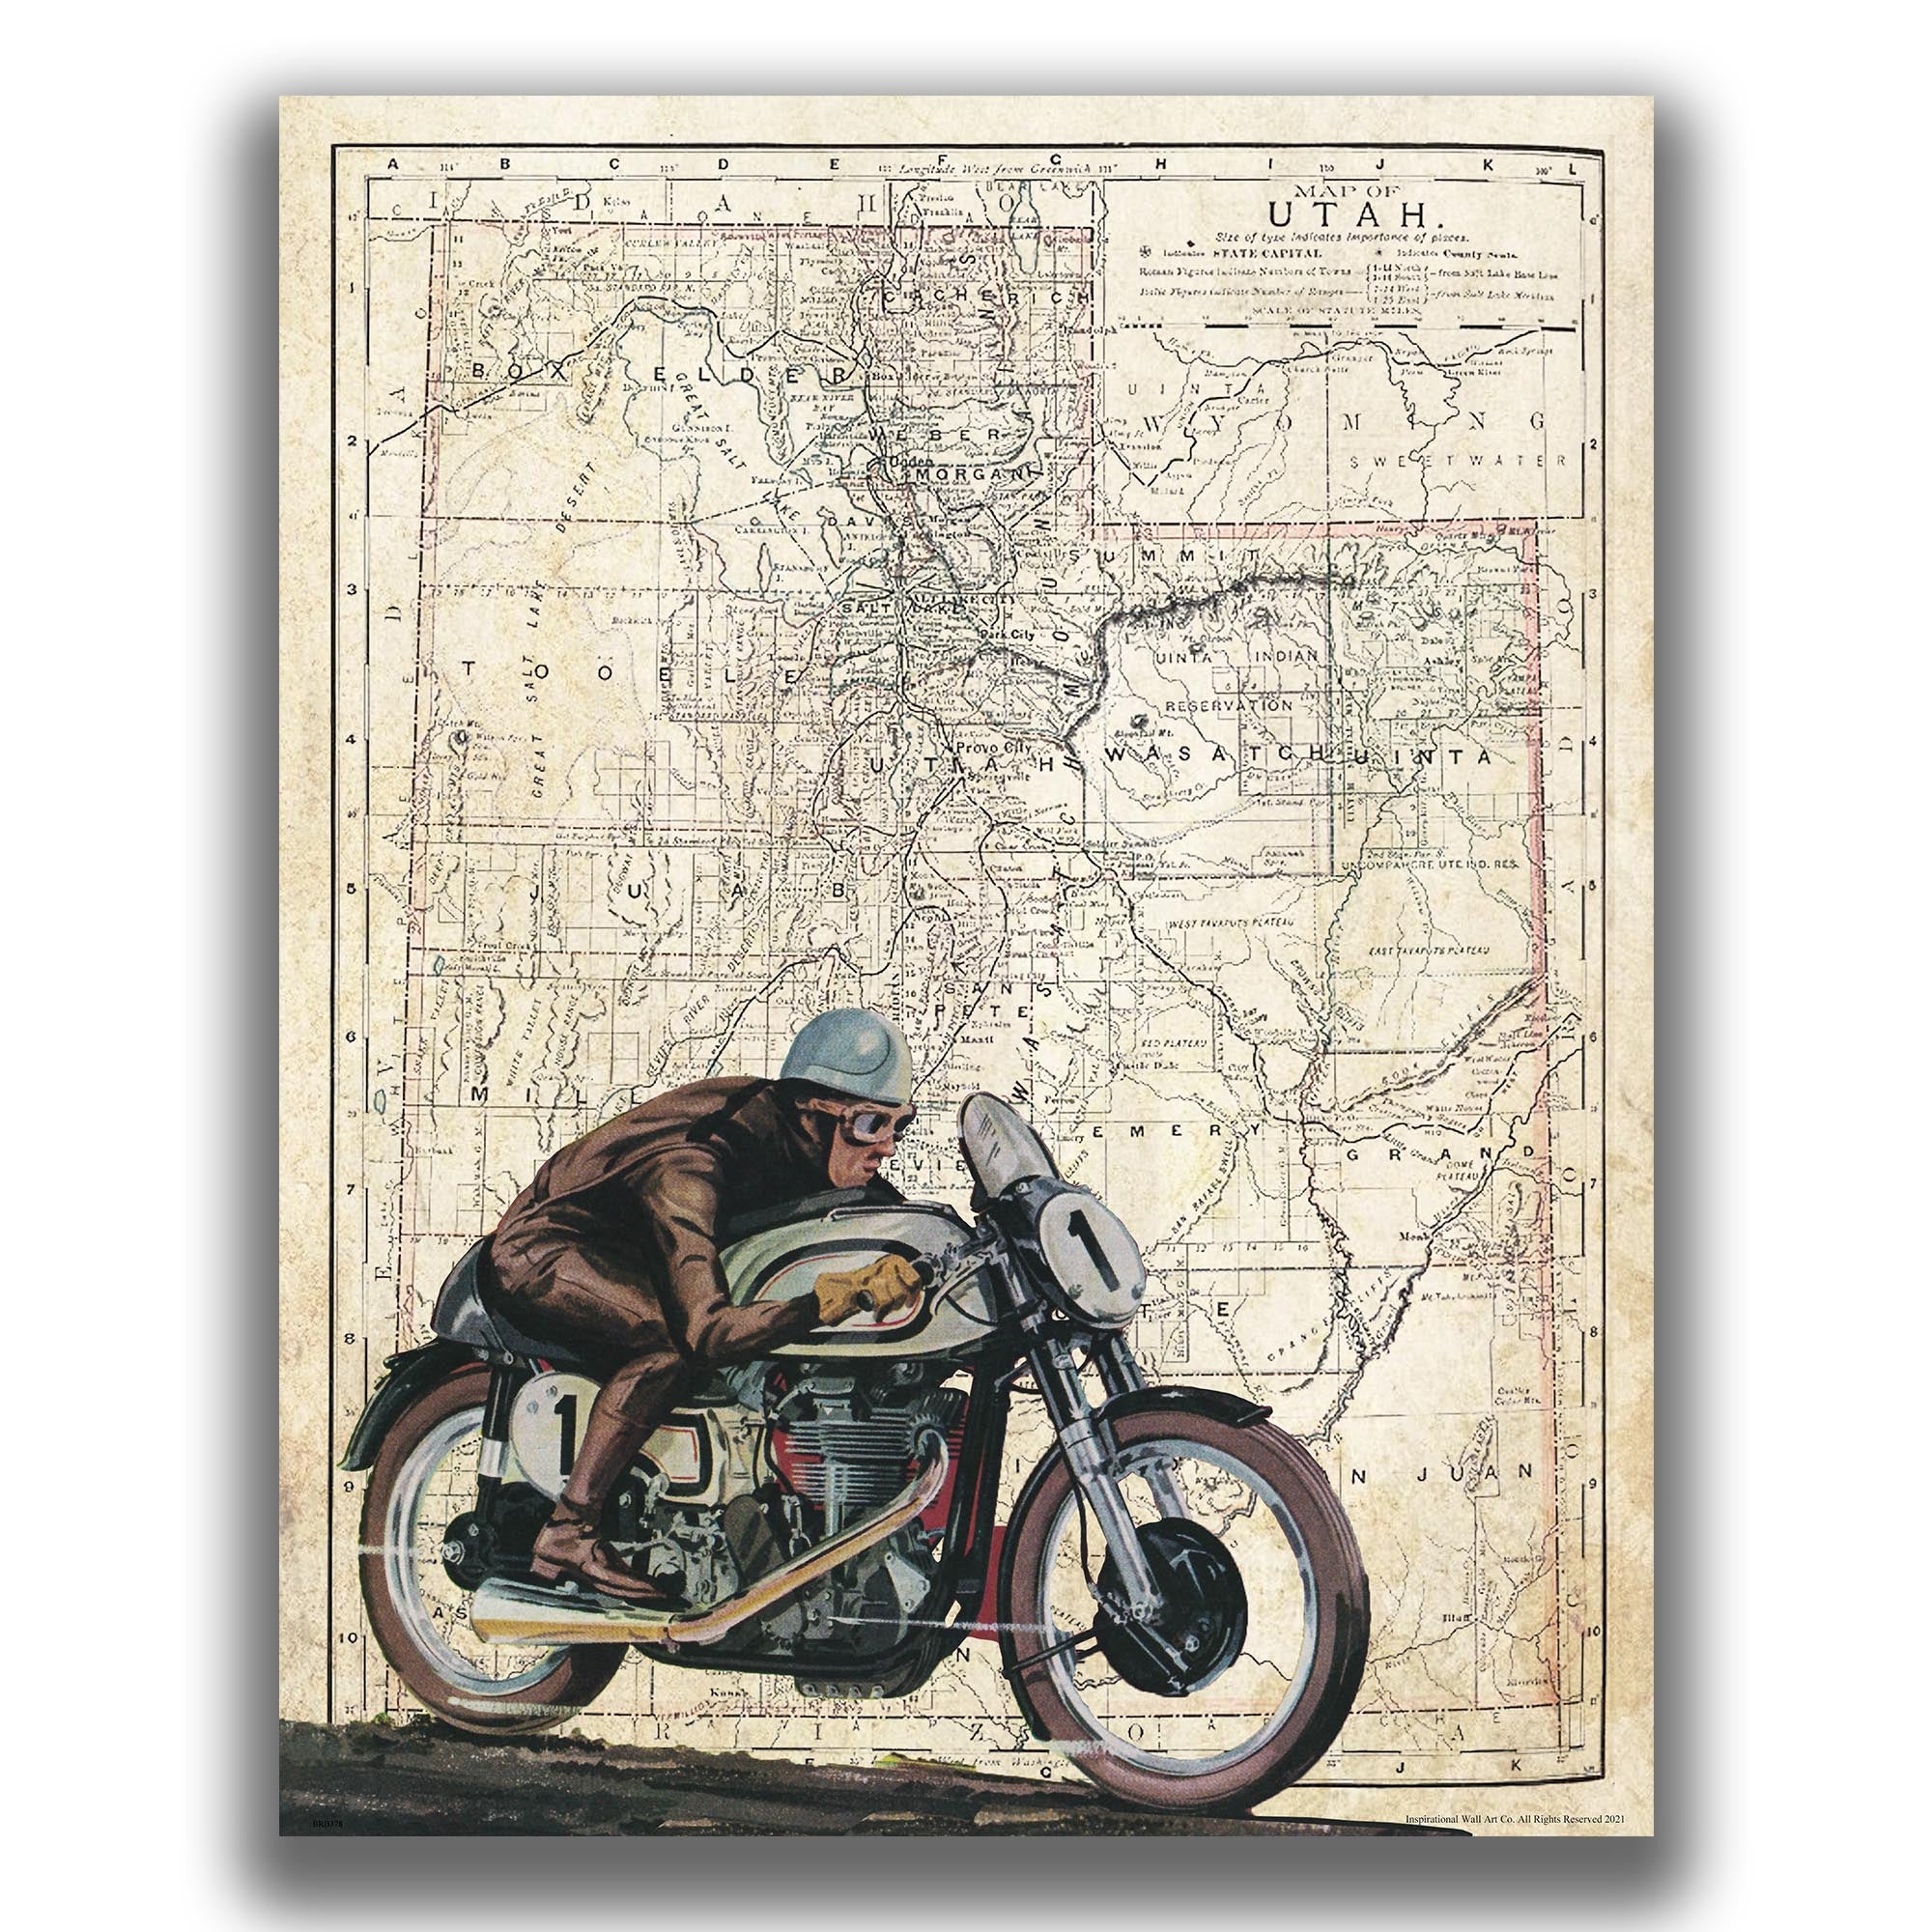 Utah - Motorcycle Poster